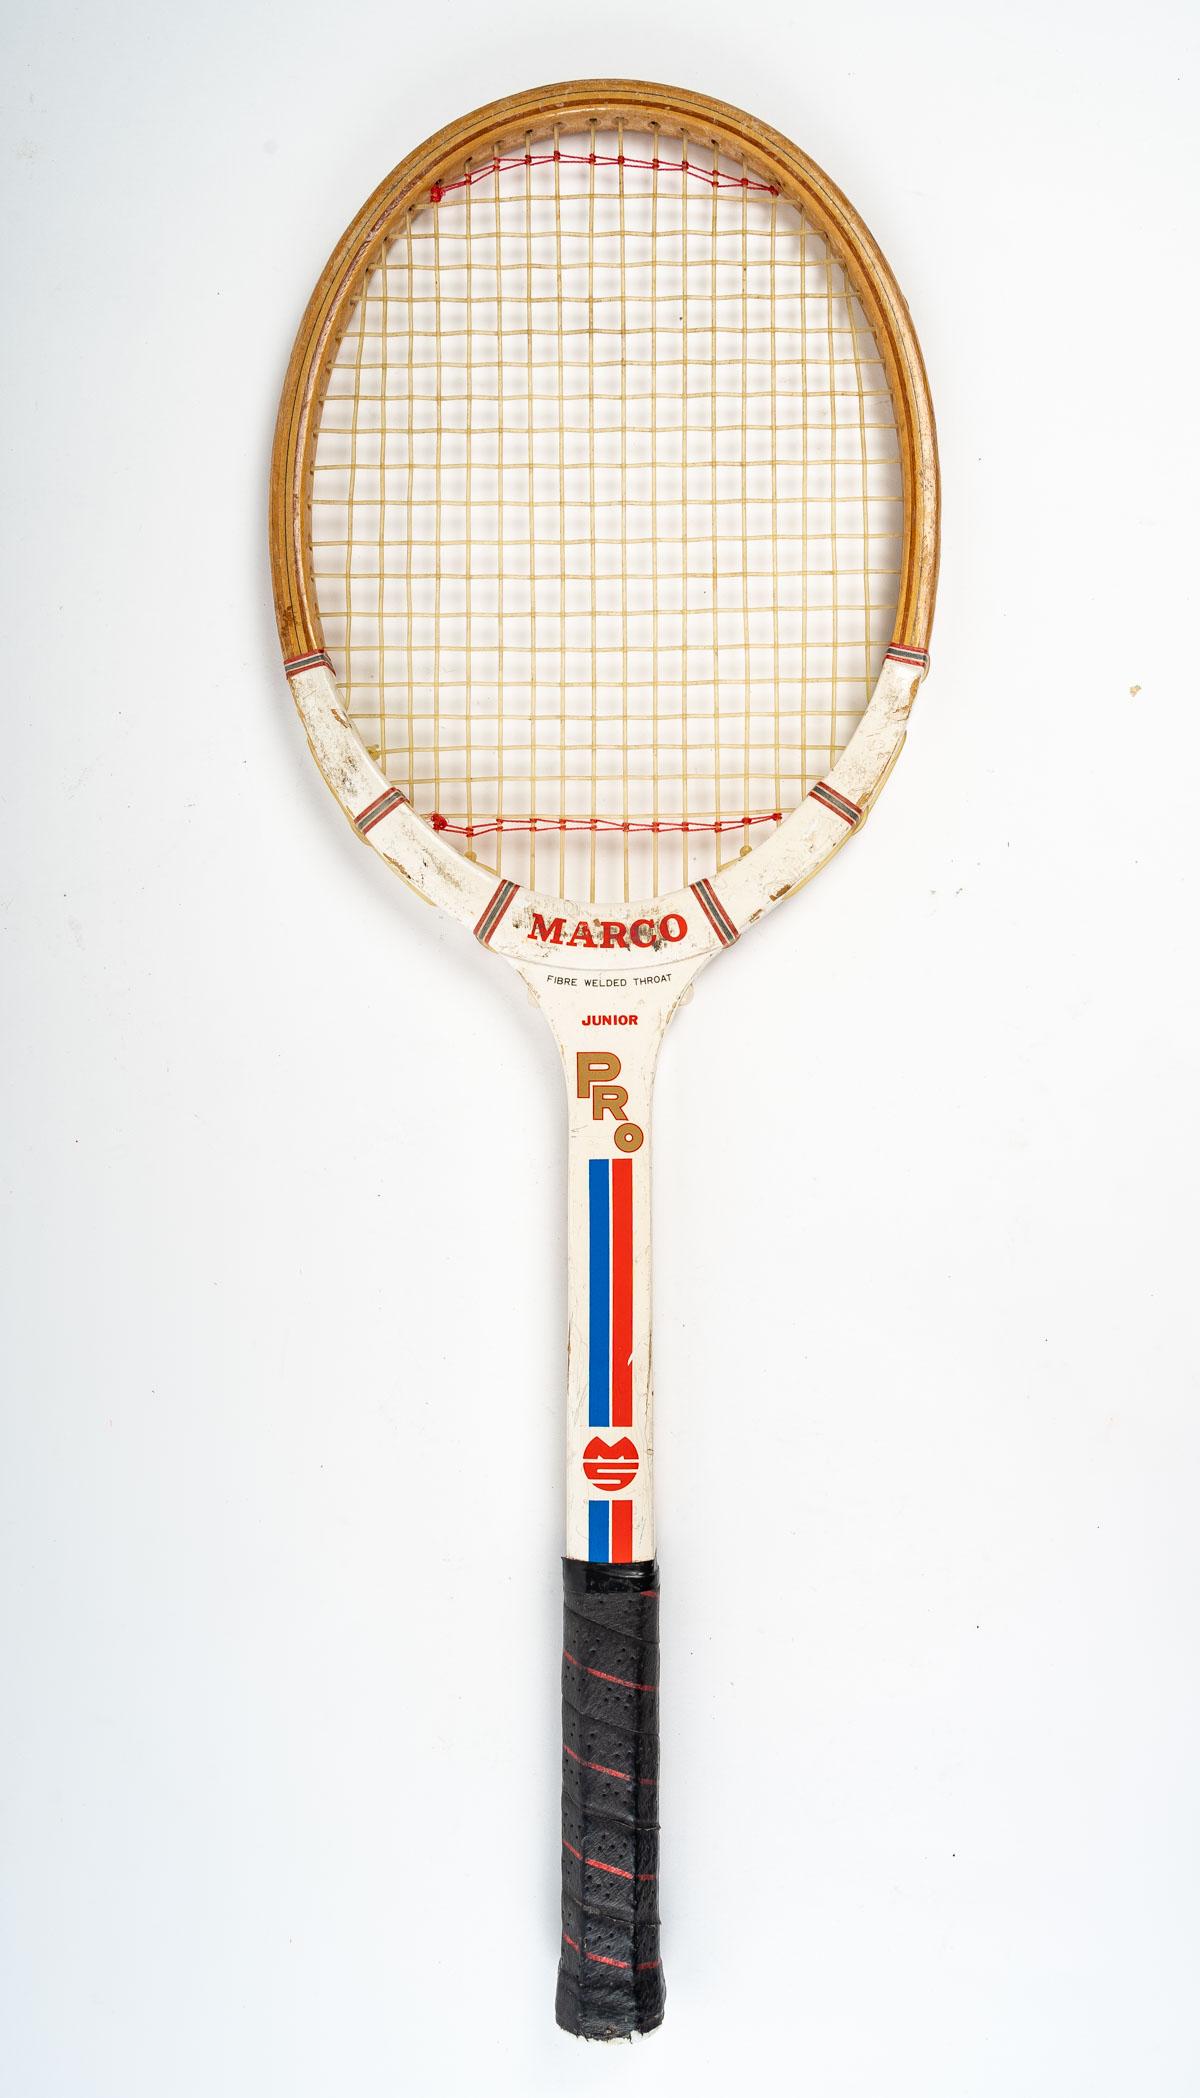 Marco tennis racket, Junior Pro, 1970.

Measures: H: 64 cm, W: 22 cm, D: 3 cm.